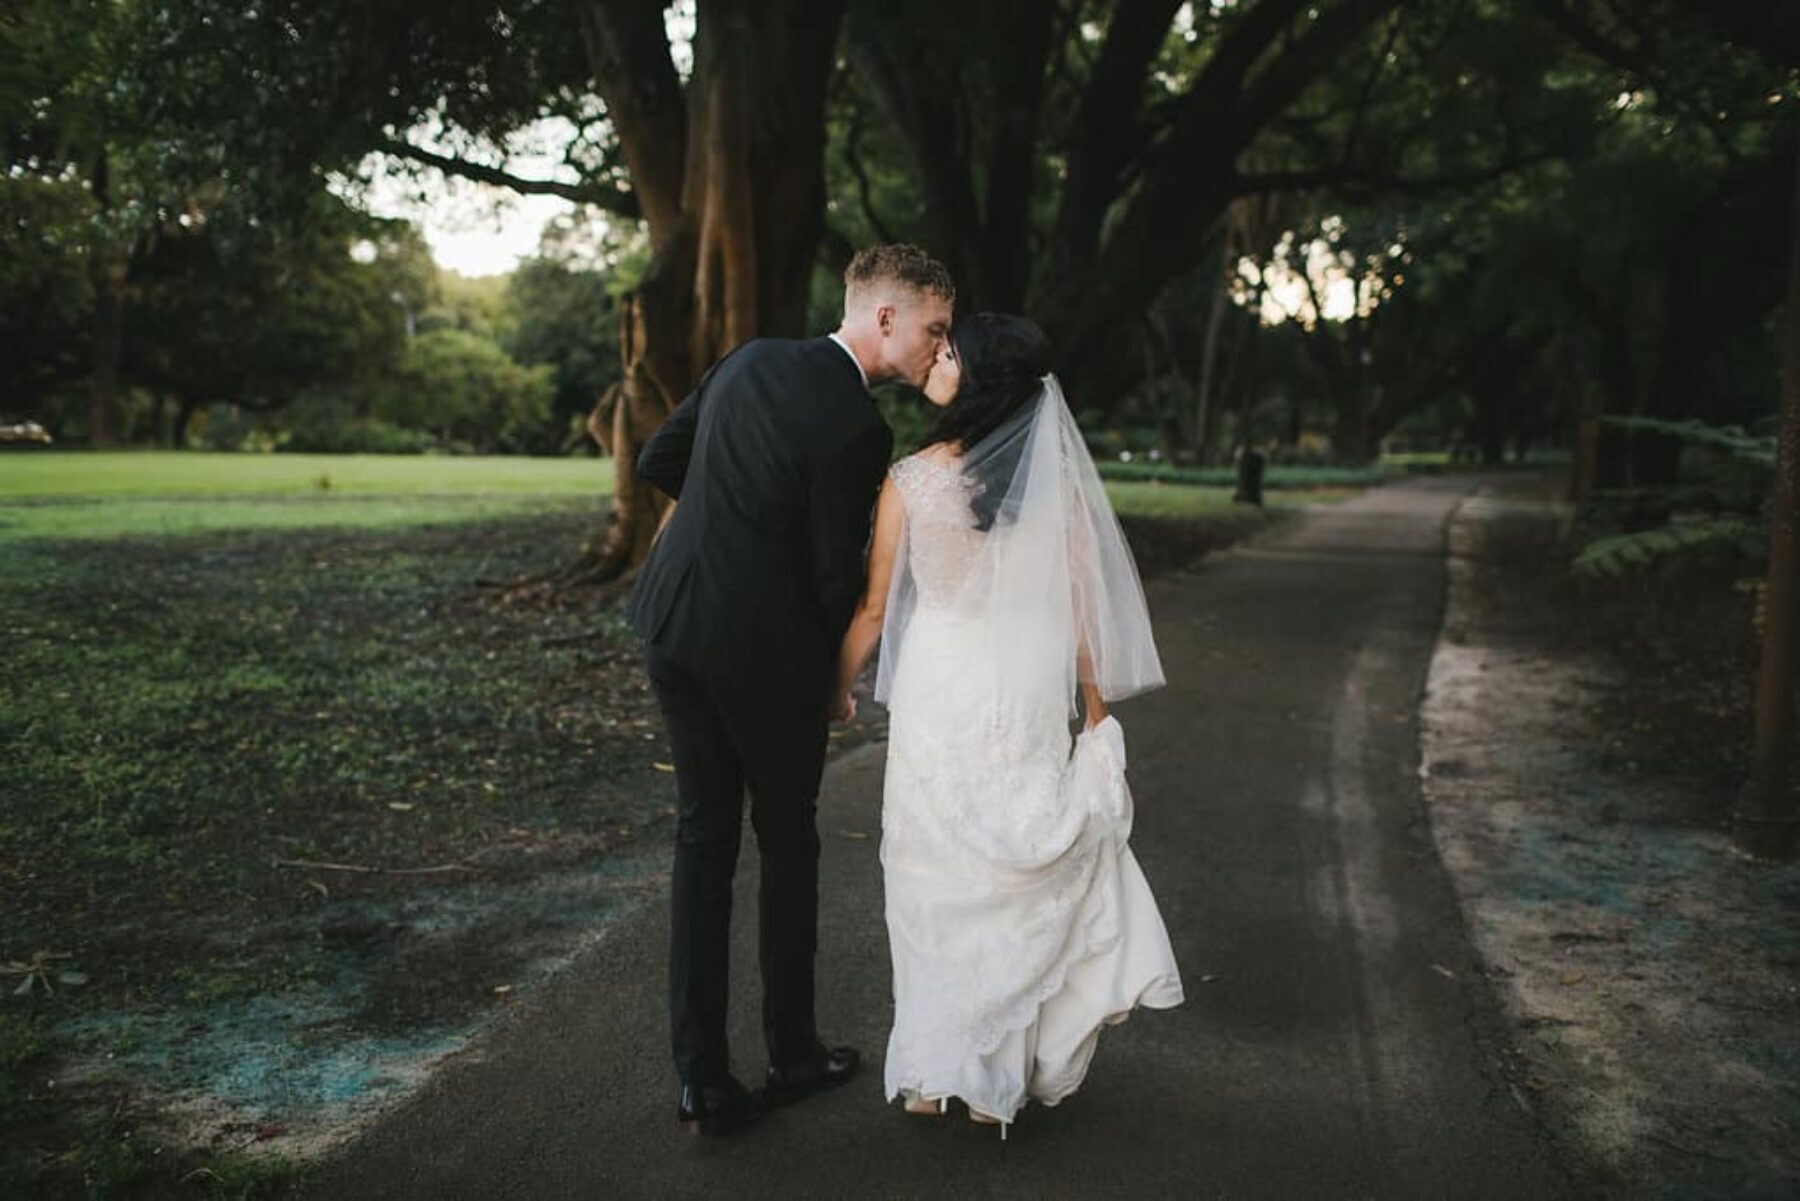 Perth City Farm wedding - photography by Amanda Alessi